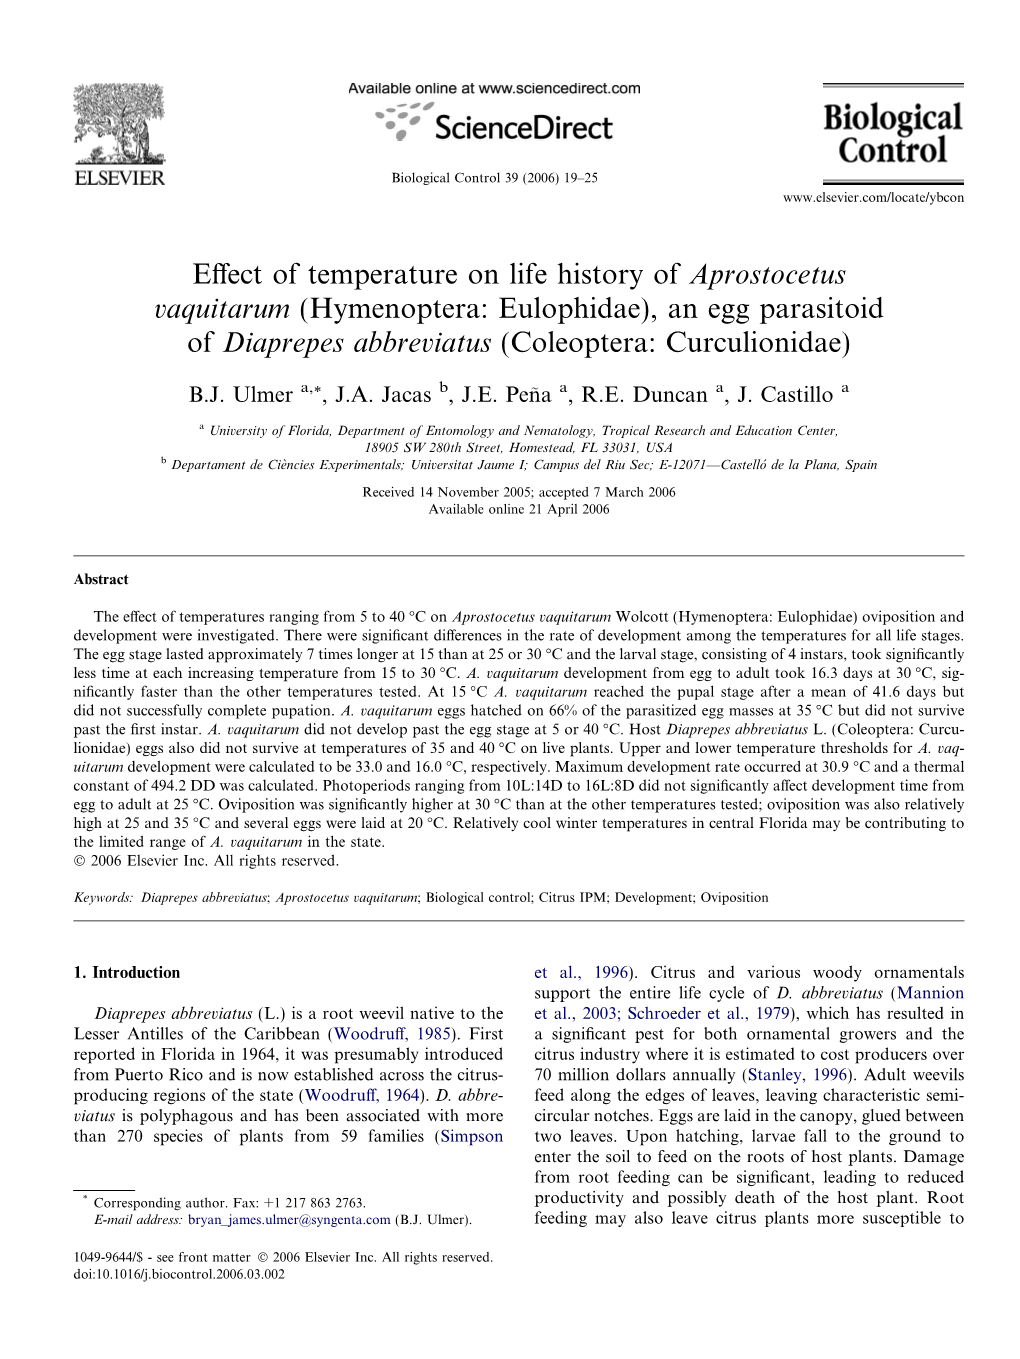 Effect of Temperature on Life History of Aprostocetus Vaquitarum